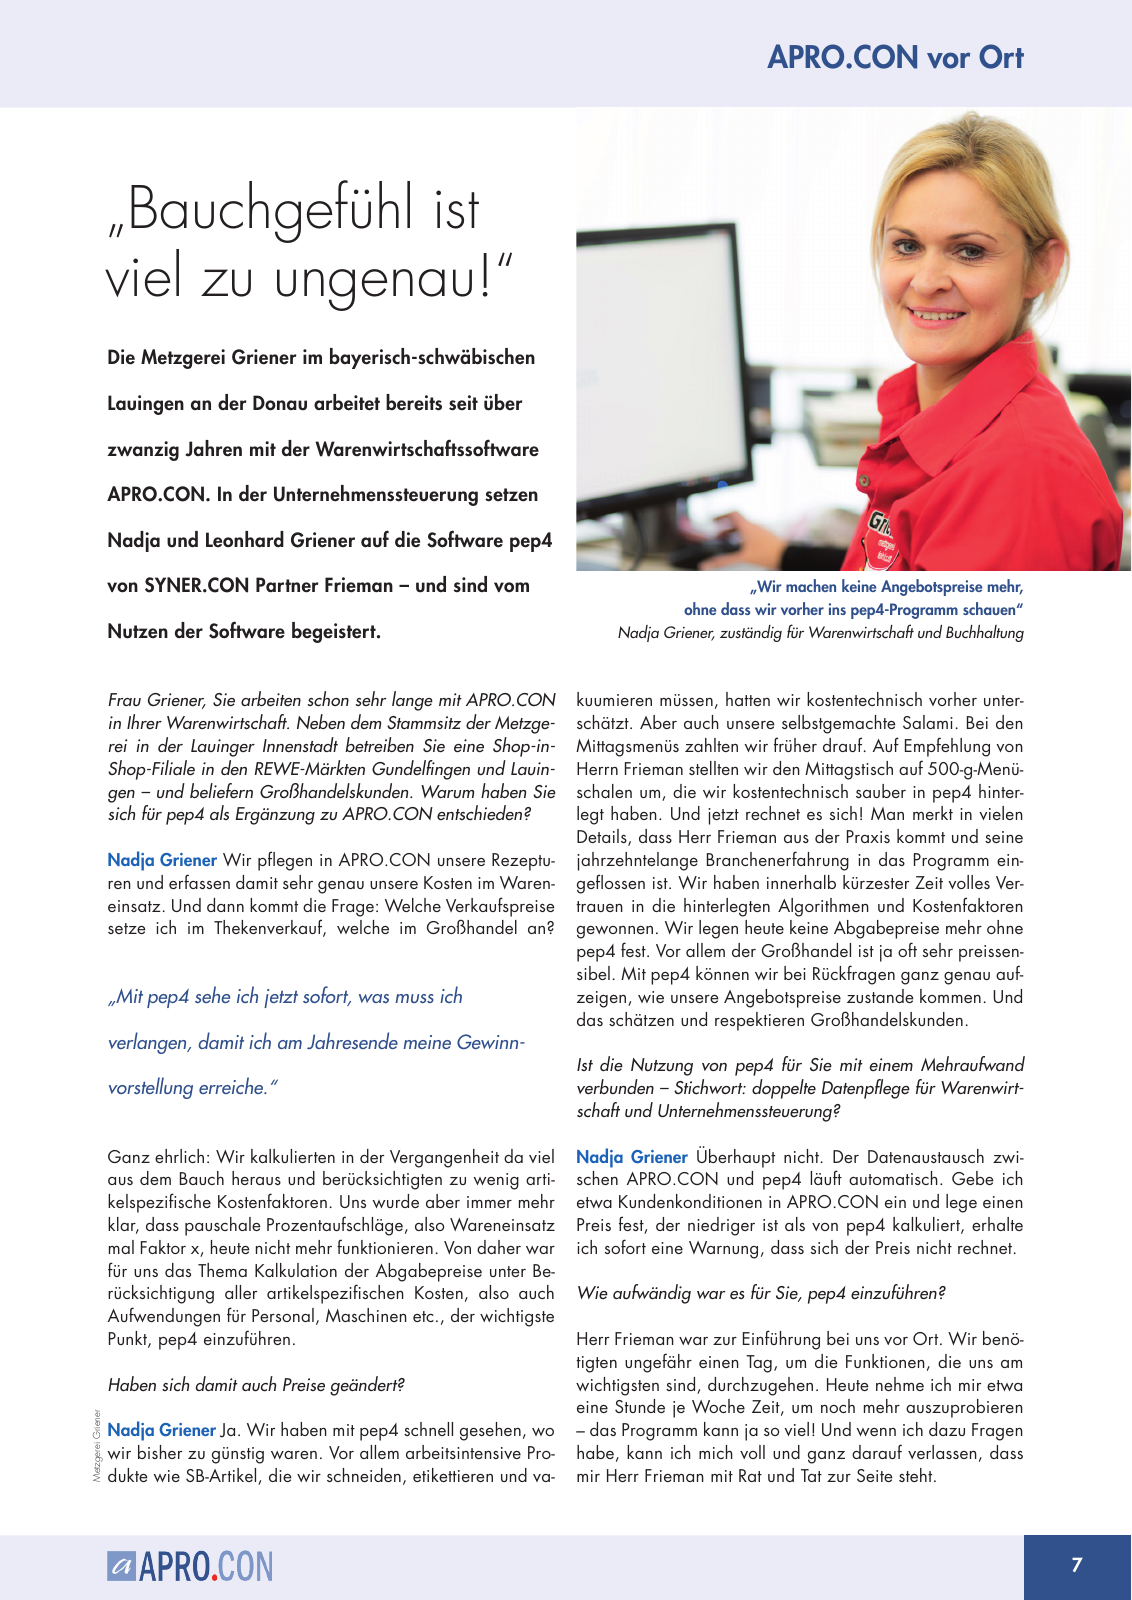 Vorschau Syner.con Newsletter Ausgabe 12 V2 Seite 7